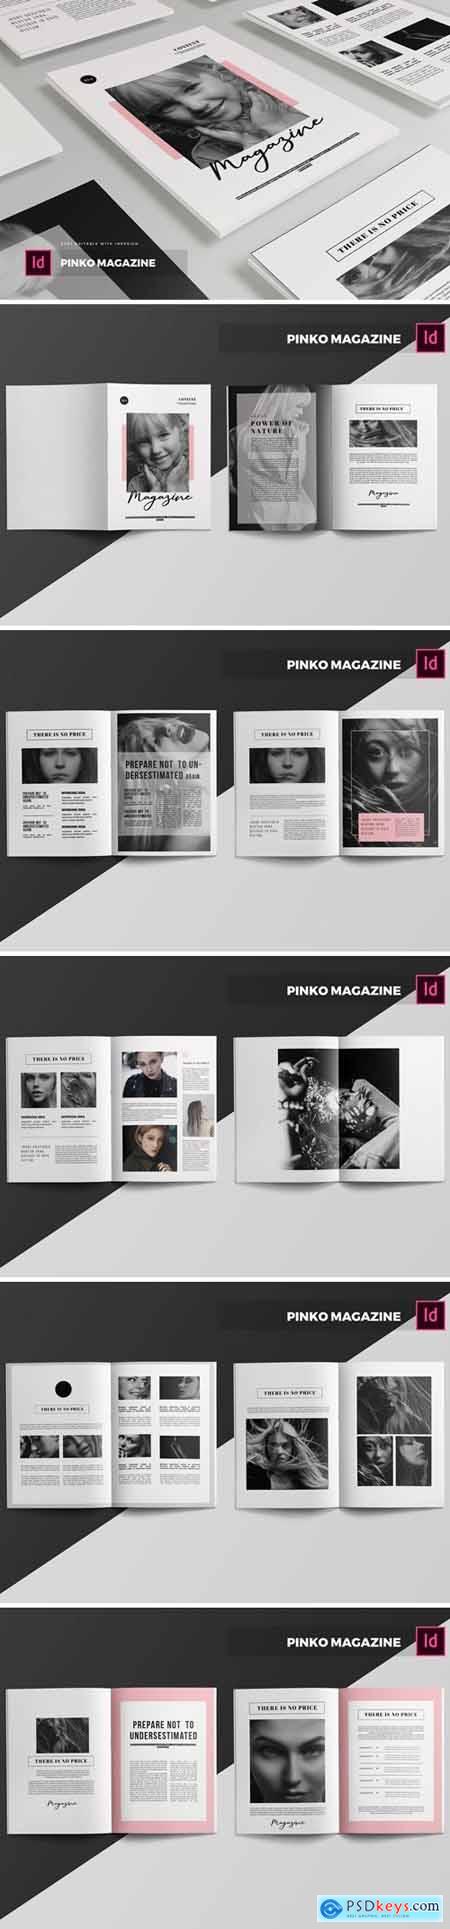 Pinko Magazine Template